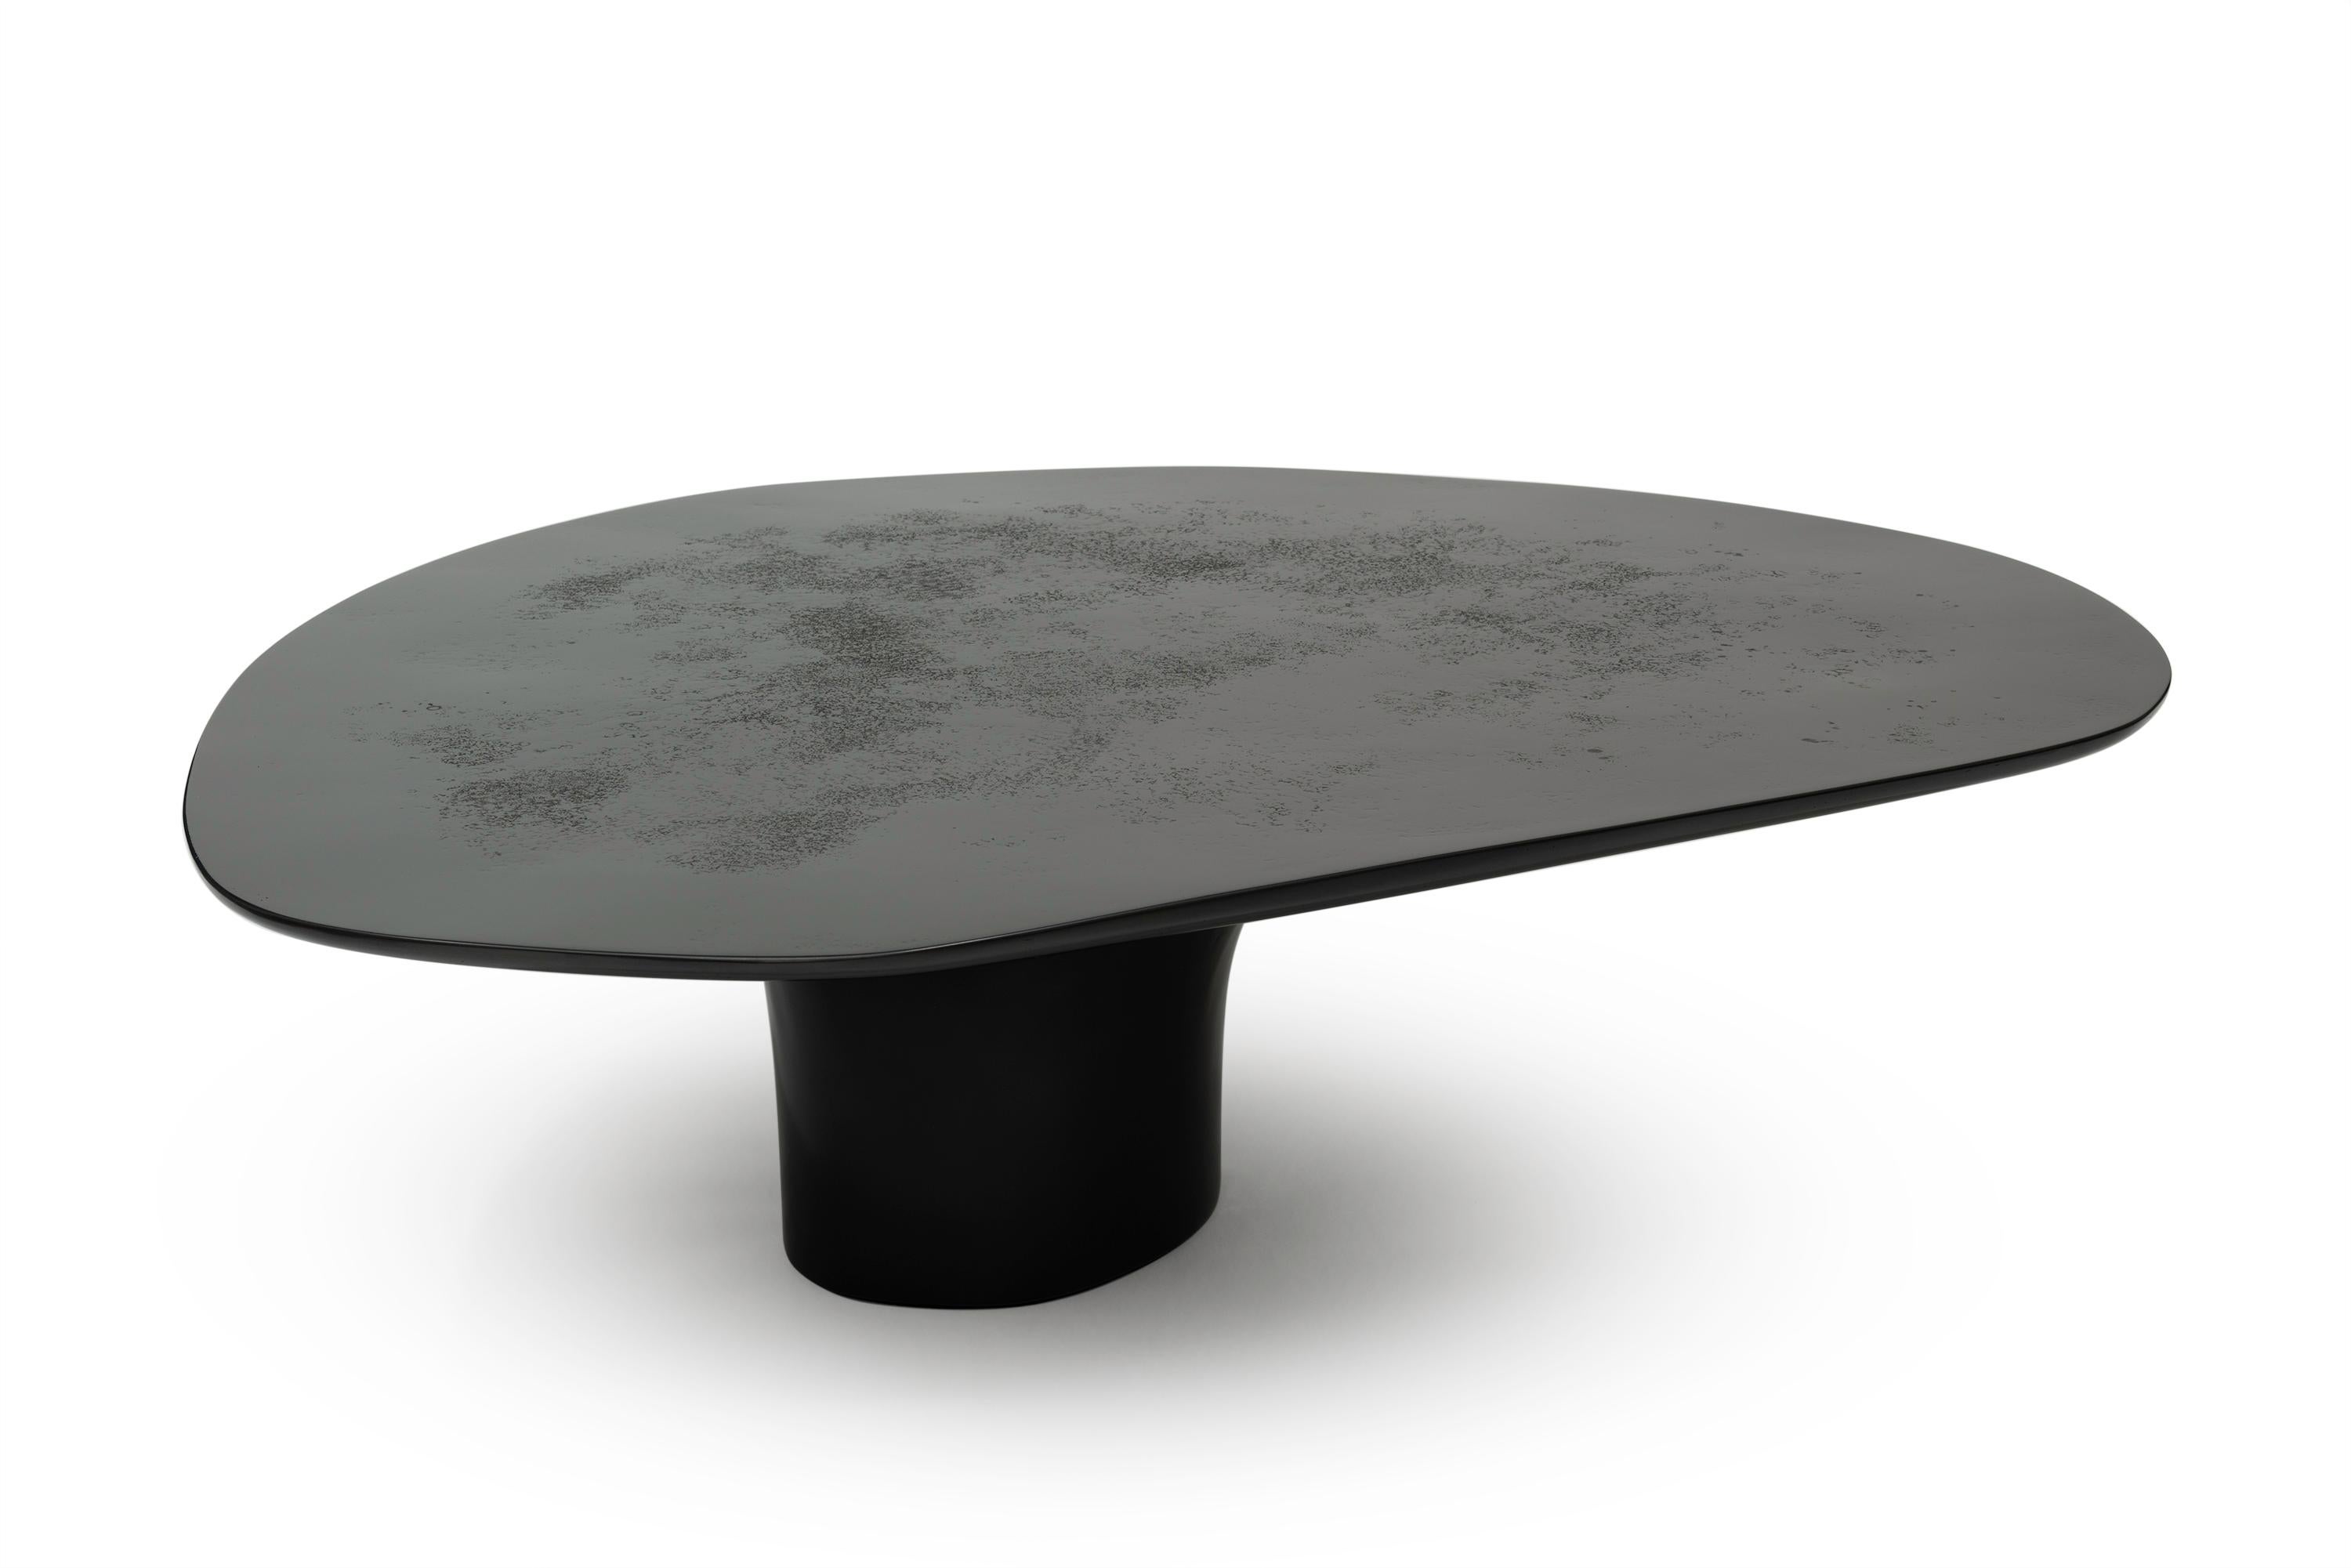 NR schwarz glatt - 21. Jahrhundert zeitgenössischer skulpturaler runder schwarzer Couchtisch

Der hochkantige, intuitiv geformte niedrige Tisch besitzt den Hauch von Schwerelosigkeit. Die Tischplatte und die Bodenbeschaffenheit erwecken den